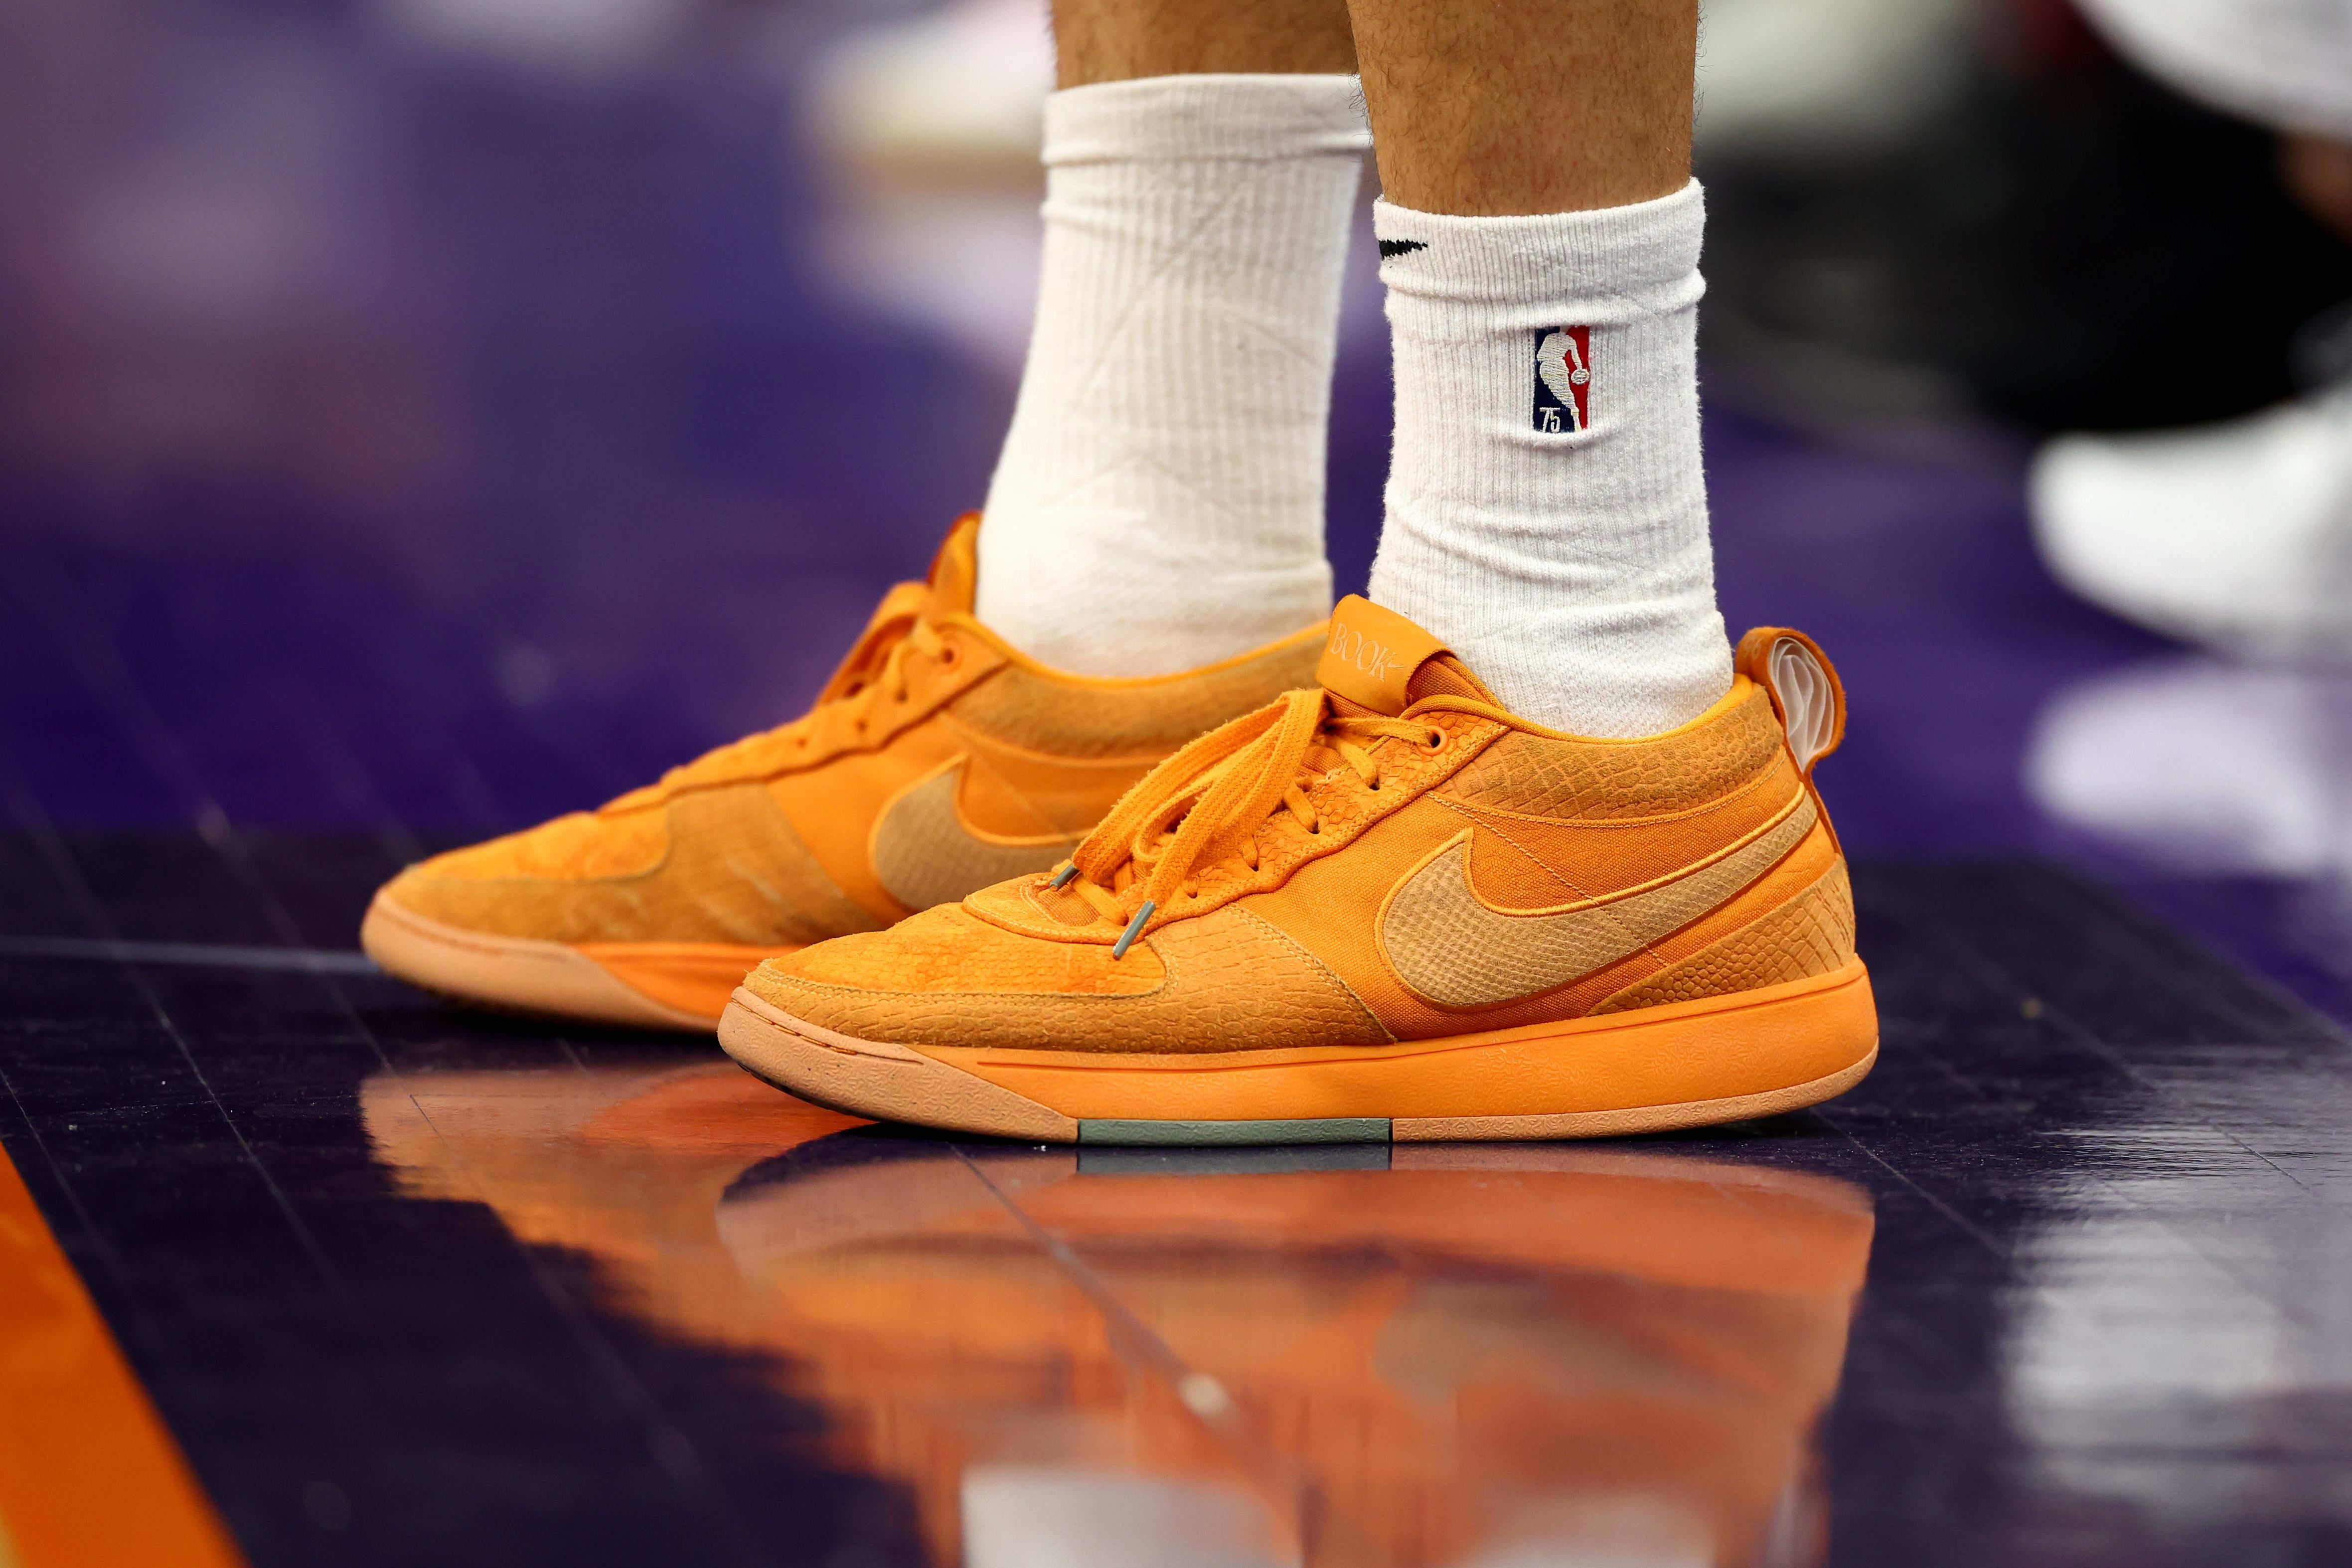 Phoenix Suns guard Devin Booker's orange Nike sneakers.